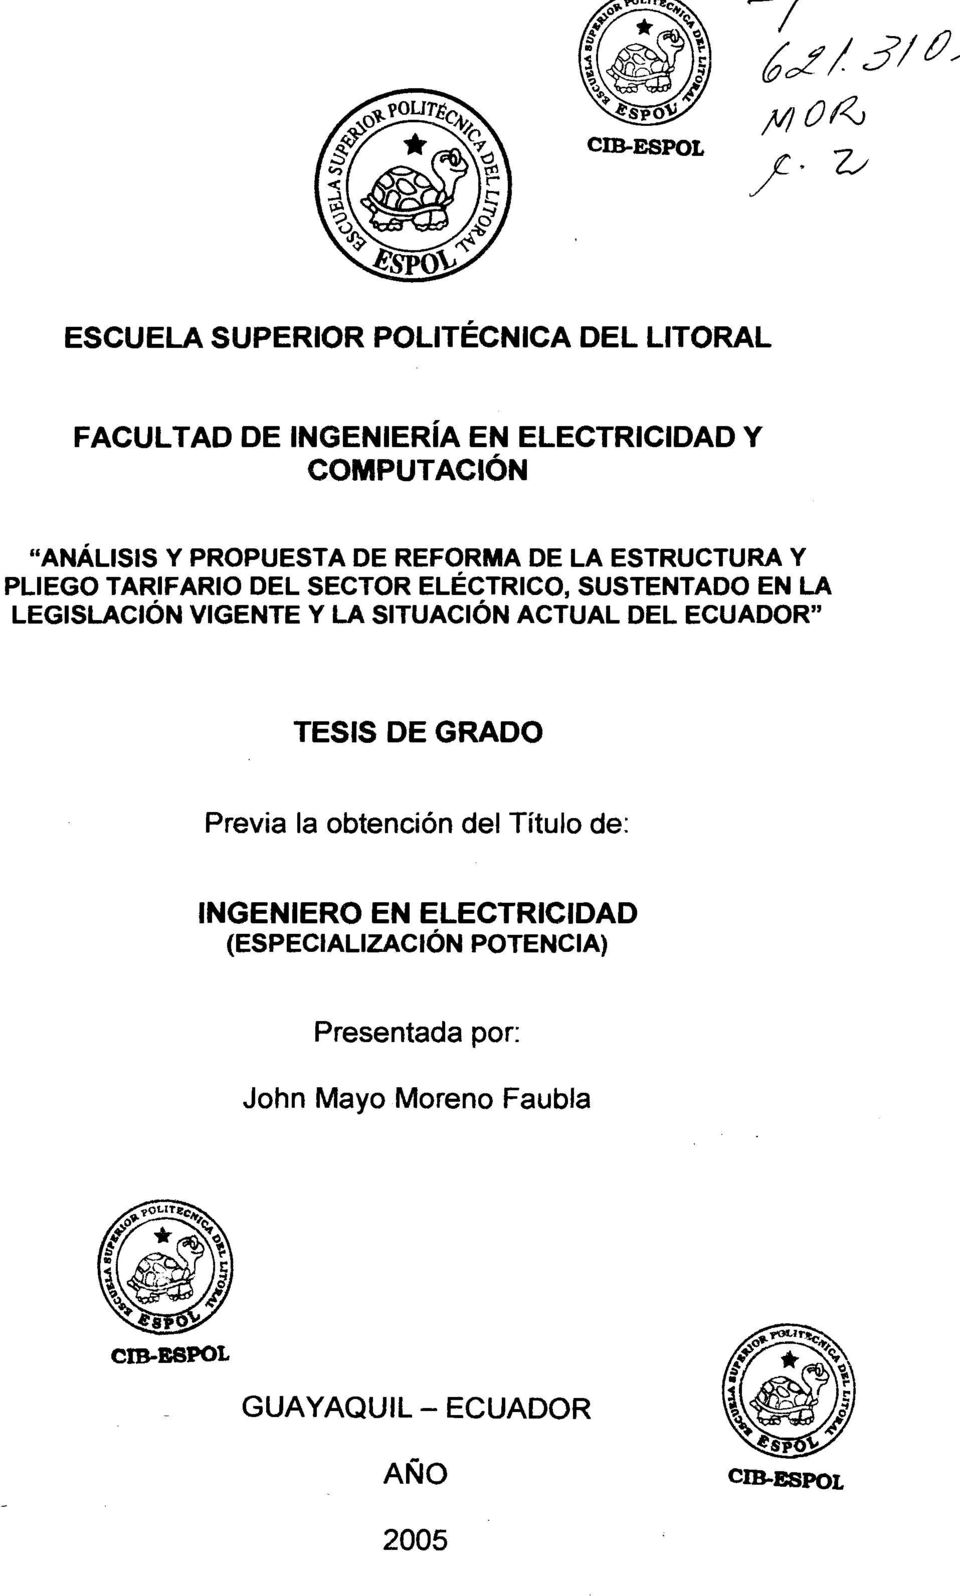 SUSTENTADO EN LA LEGISLACION VIGENTE Y LA SITUACION ACTUAL DEL ECUADOR" Previa la obtencion del